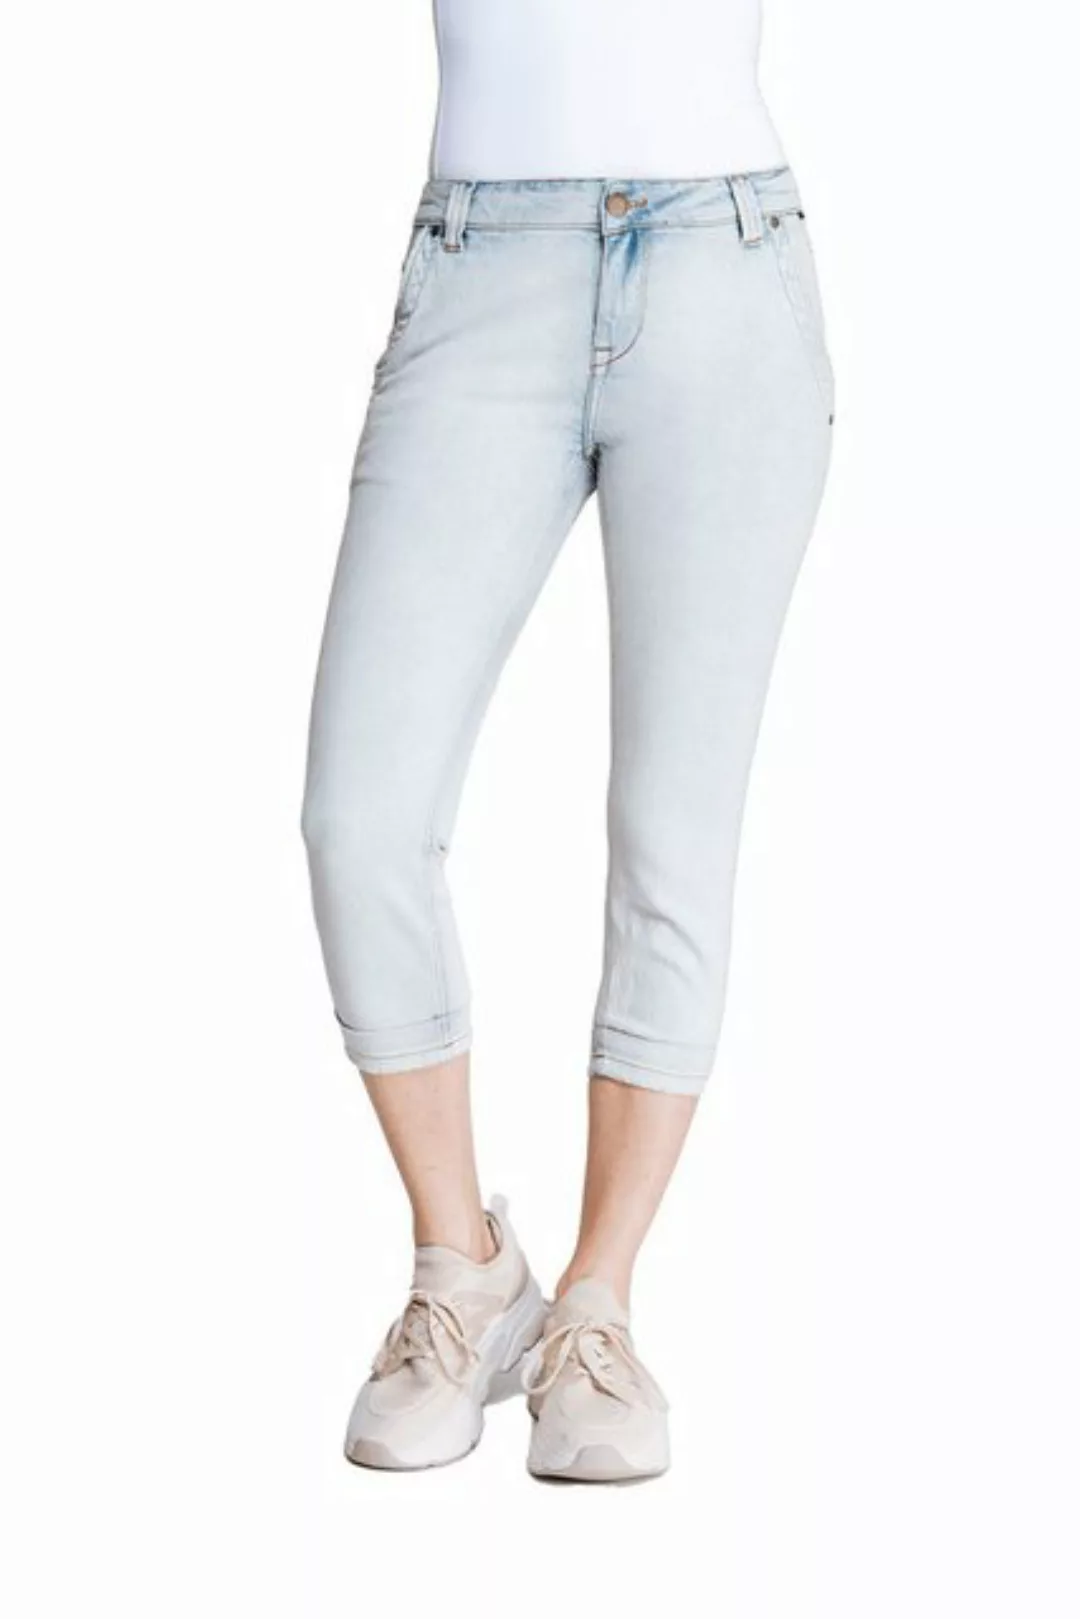 Zhrill Mom-Jeans Capri Jeans DALVA Blau angenehmer Tragekomfort günstig online kaufen